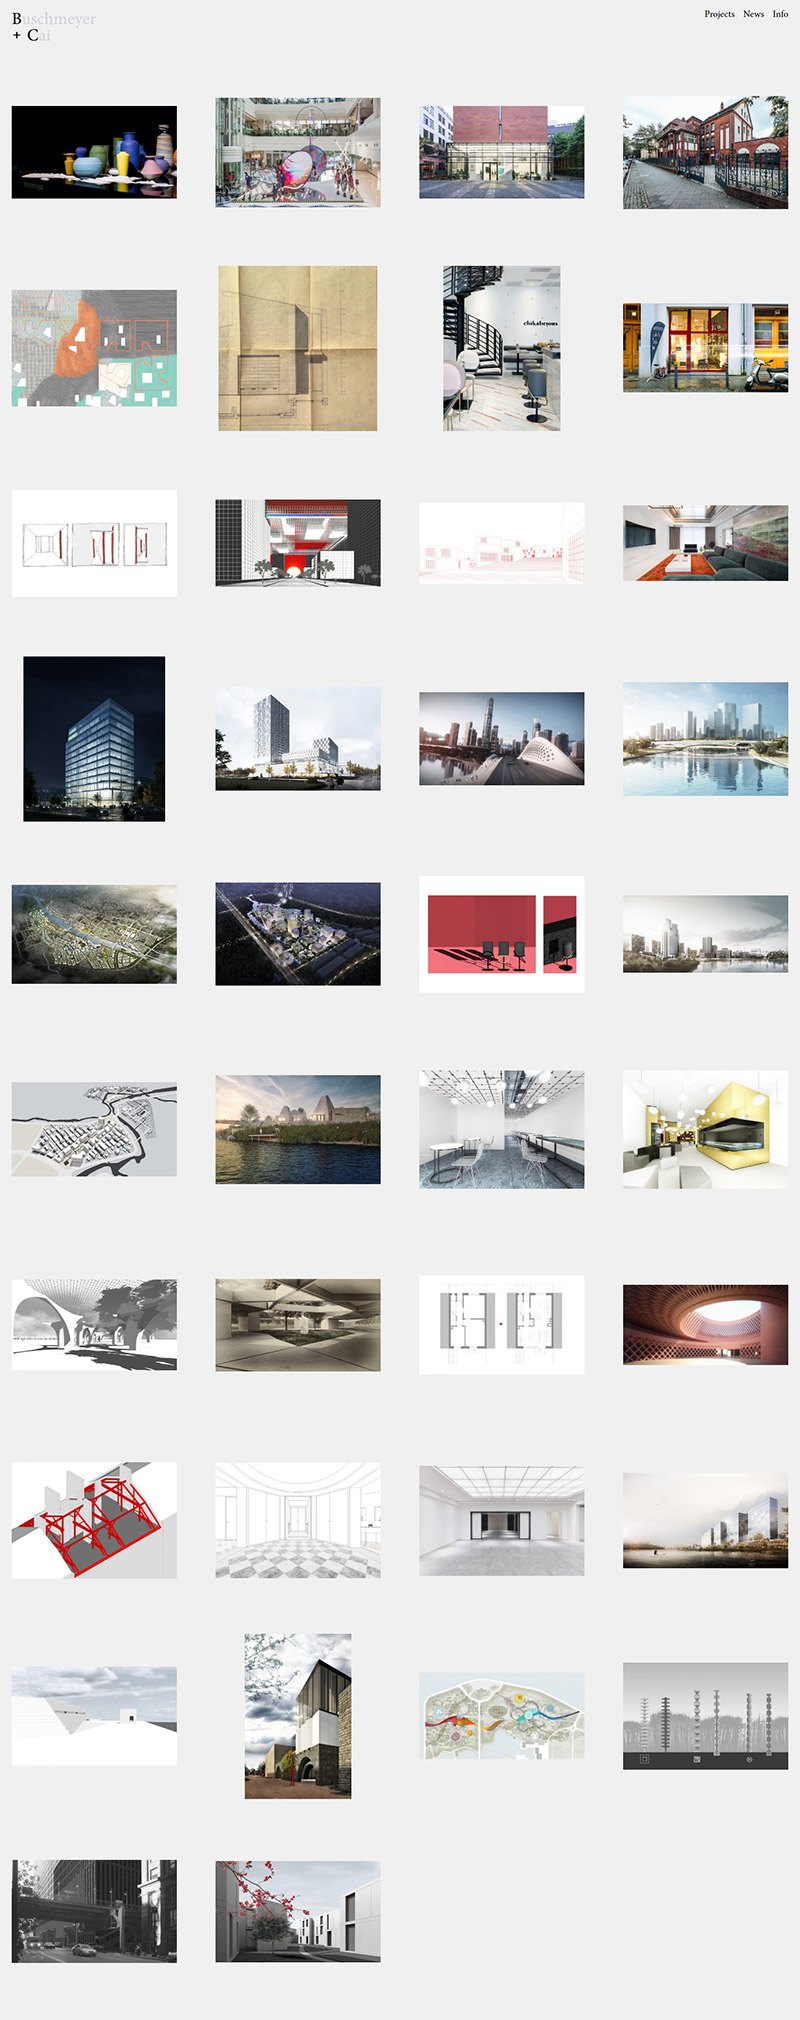 联合企邦网站设计/德国建筑设计公司B+C